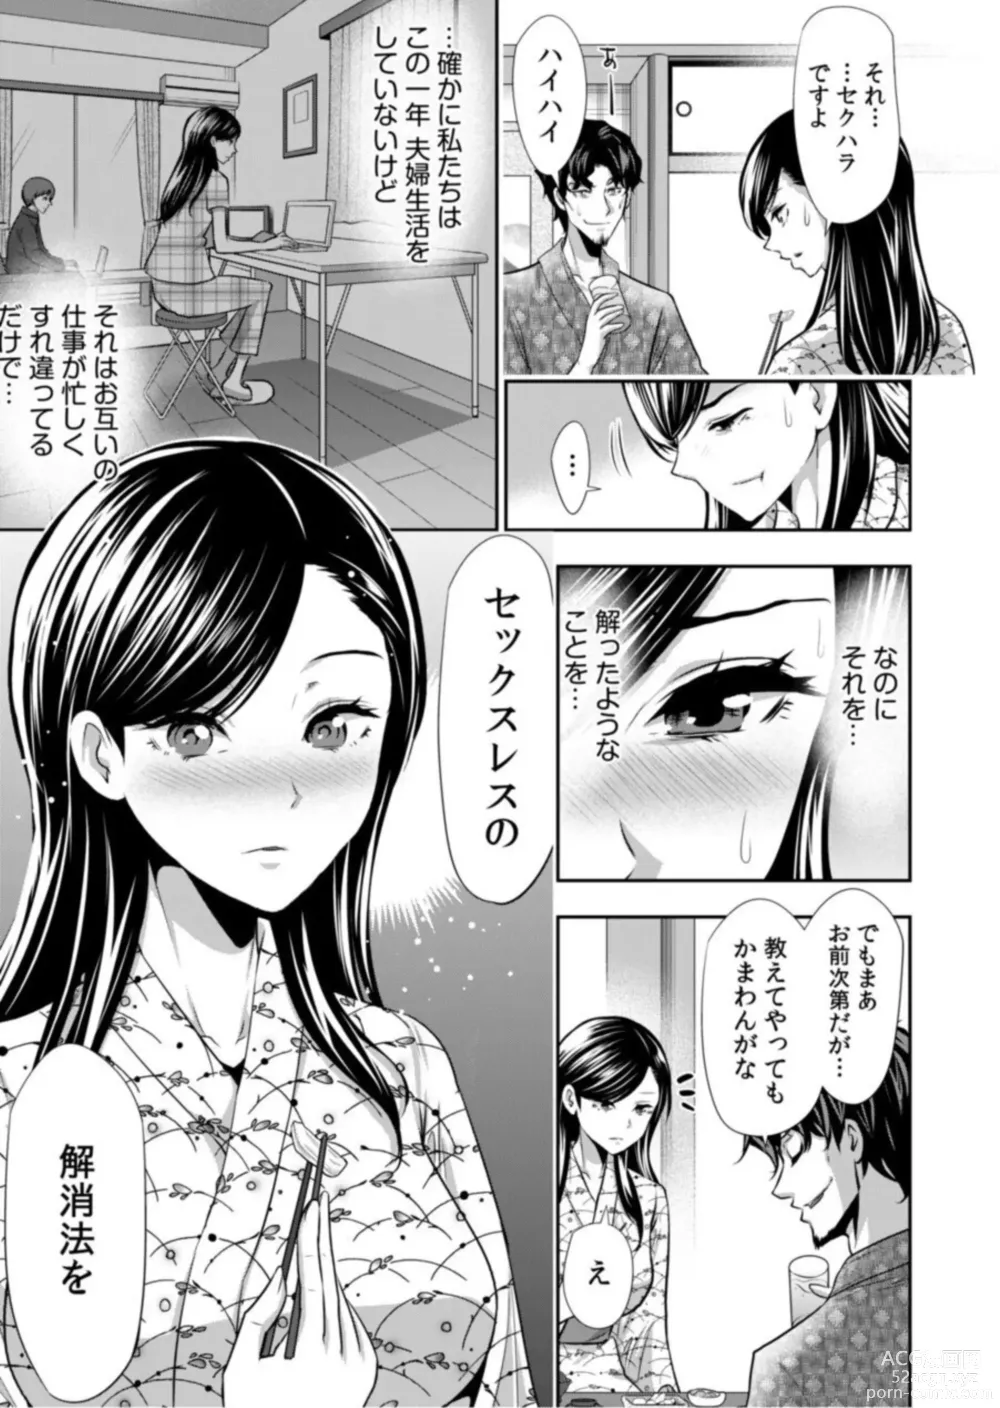 Page 11 of manga Daikirai na Motokare Joushi to Masakano Shucchou Aibeya... Massage no Hazu ga Asa made Nandomo Nandomo... 1